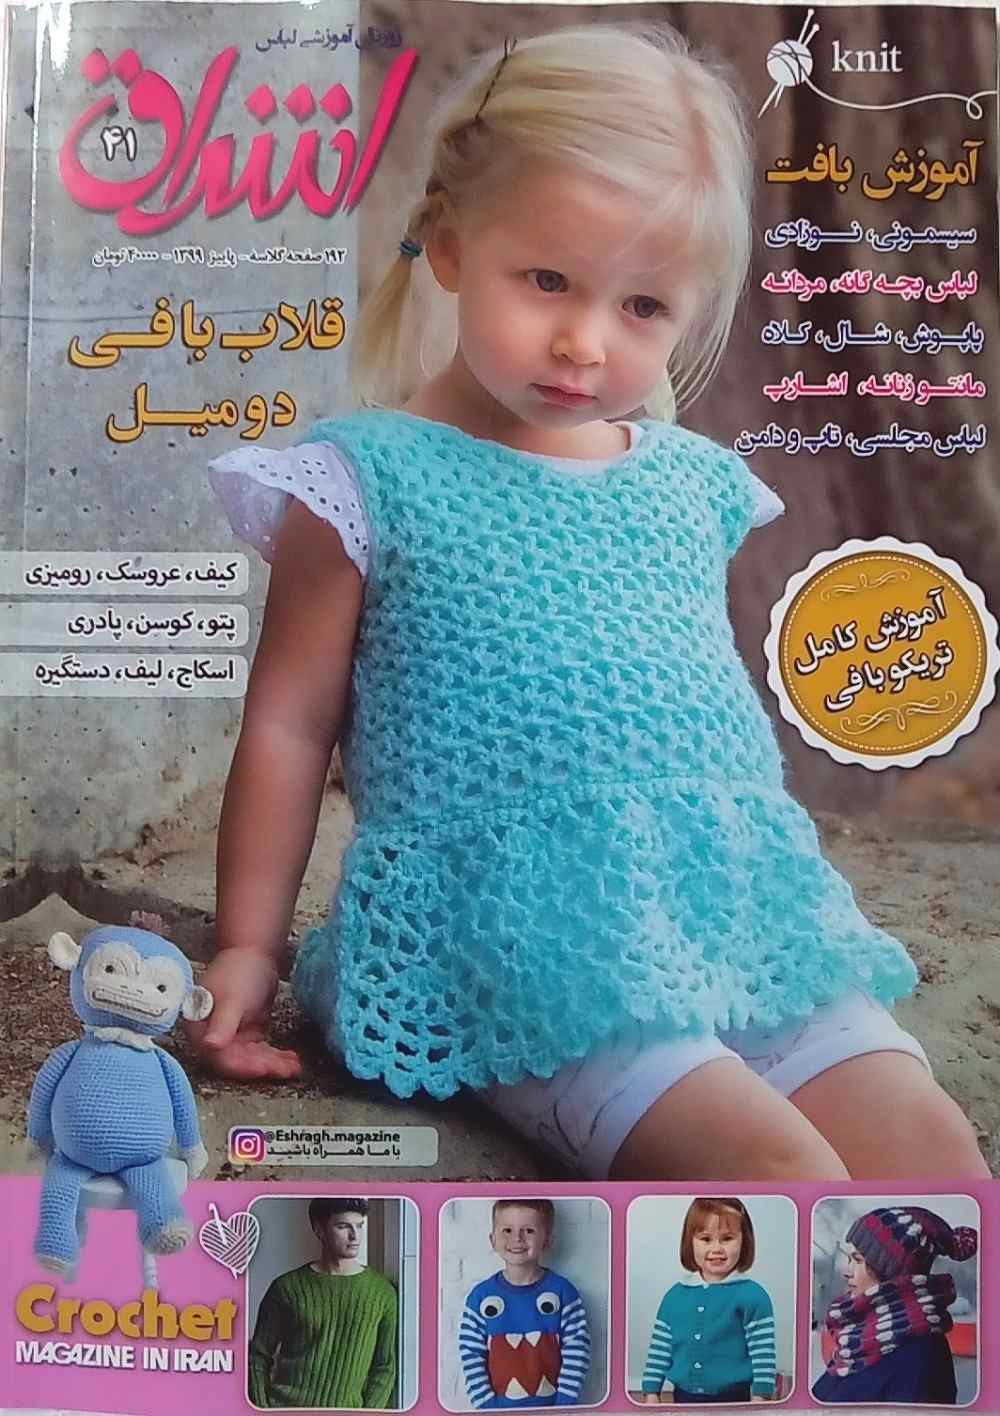 مجله بافت اشراق 41 در شهر کاموا